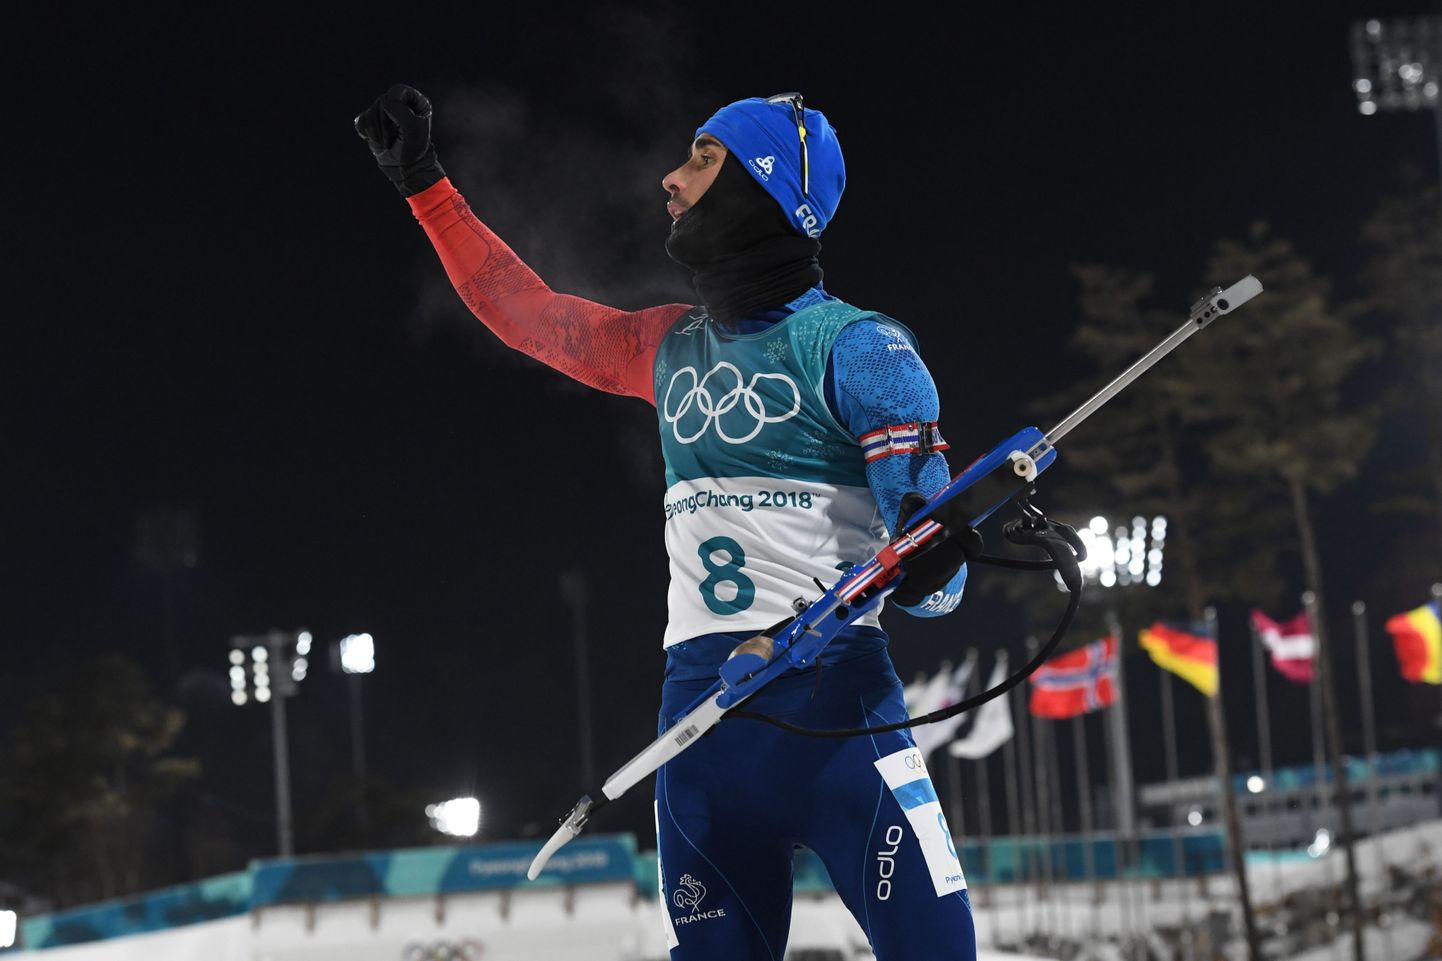 Martin Fourcade'il oli esimest korda Pyeongchangi olümpiamängudel põhjust rusikas taeva poole tõsta.